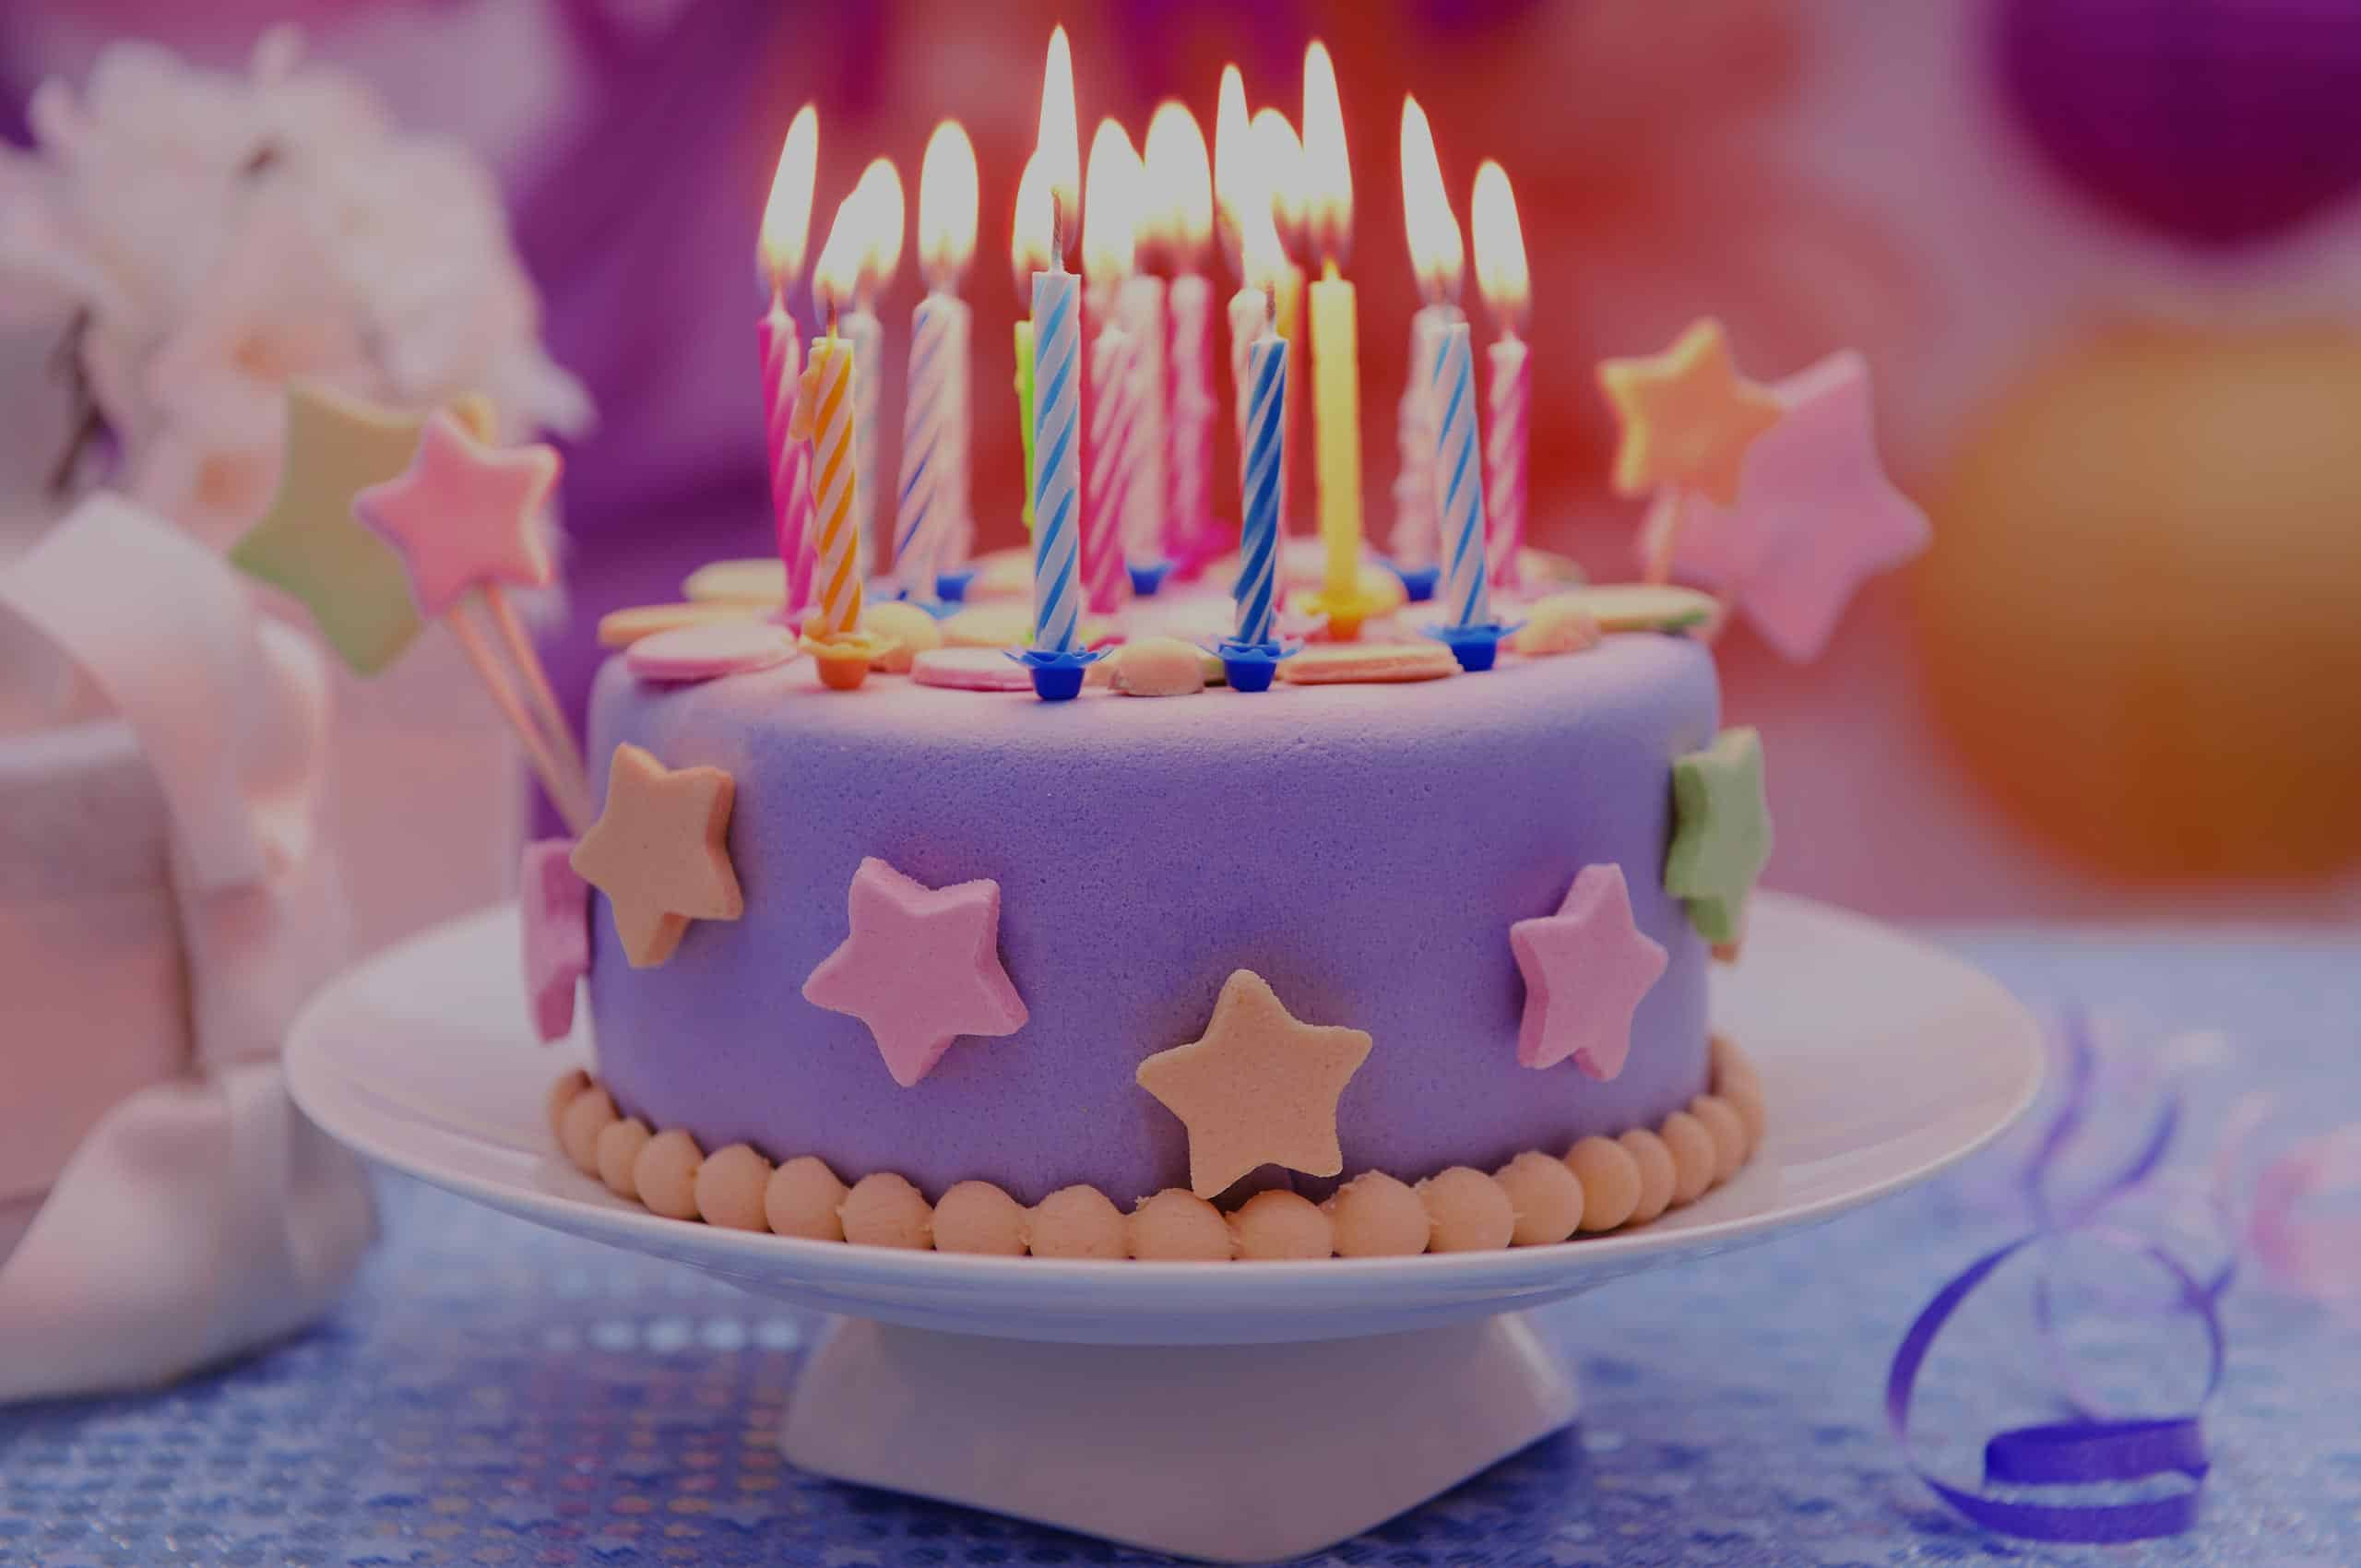 Costco Birthday Cakes Prices
 COSTCO CAKE PRICES